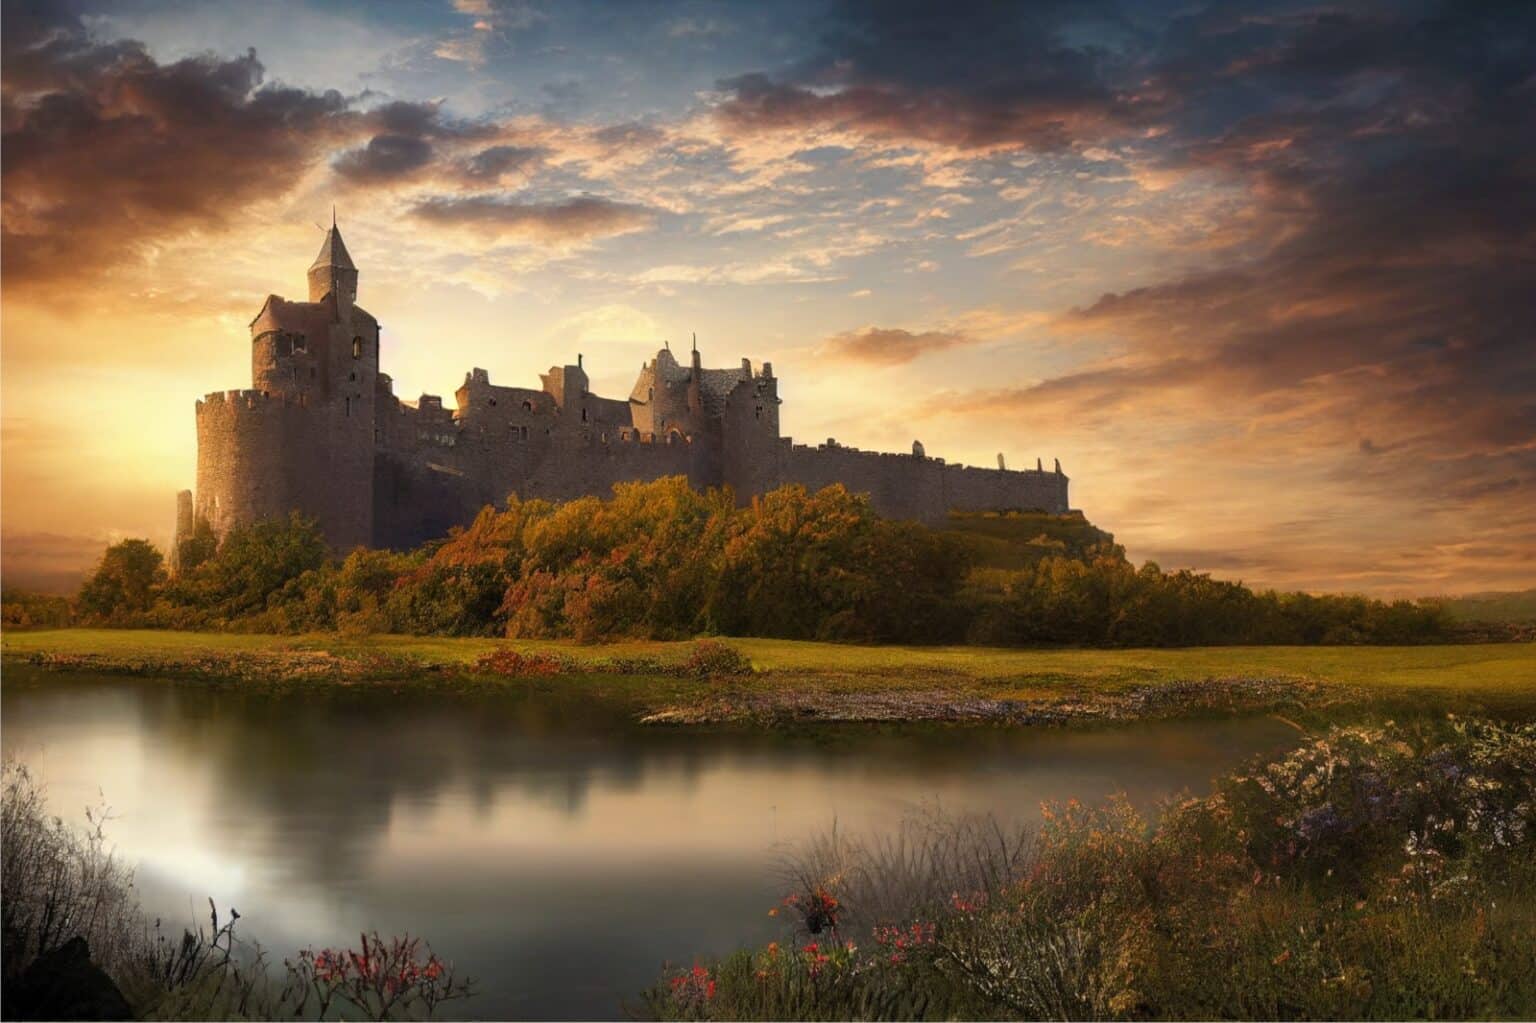 נכס ציוני: הטירה של הברון רוטשילד מוצעת למכירה ב-454 מיליון דולר